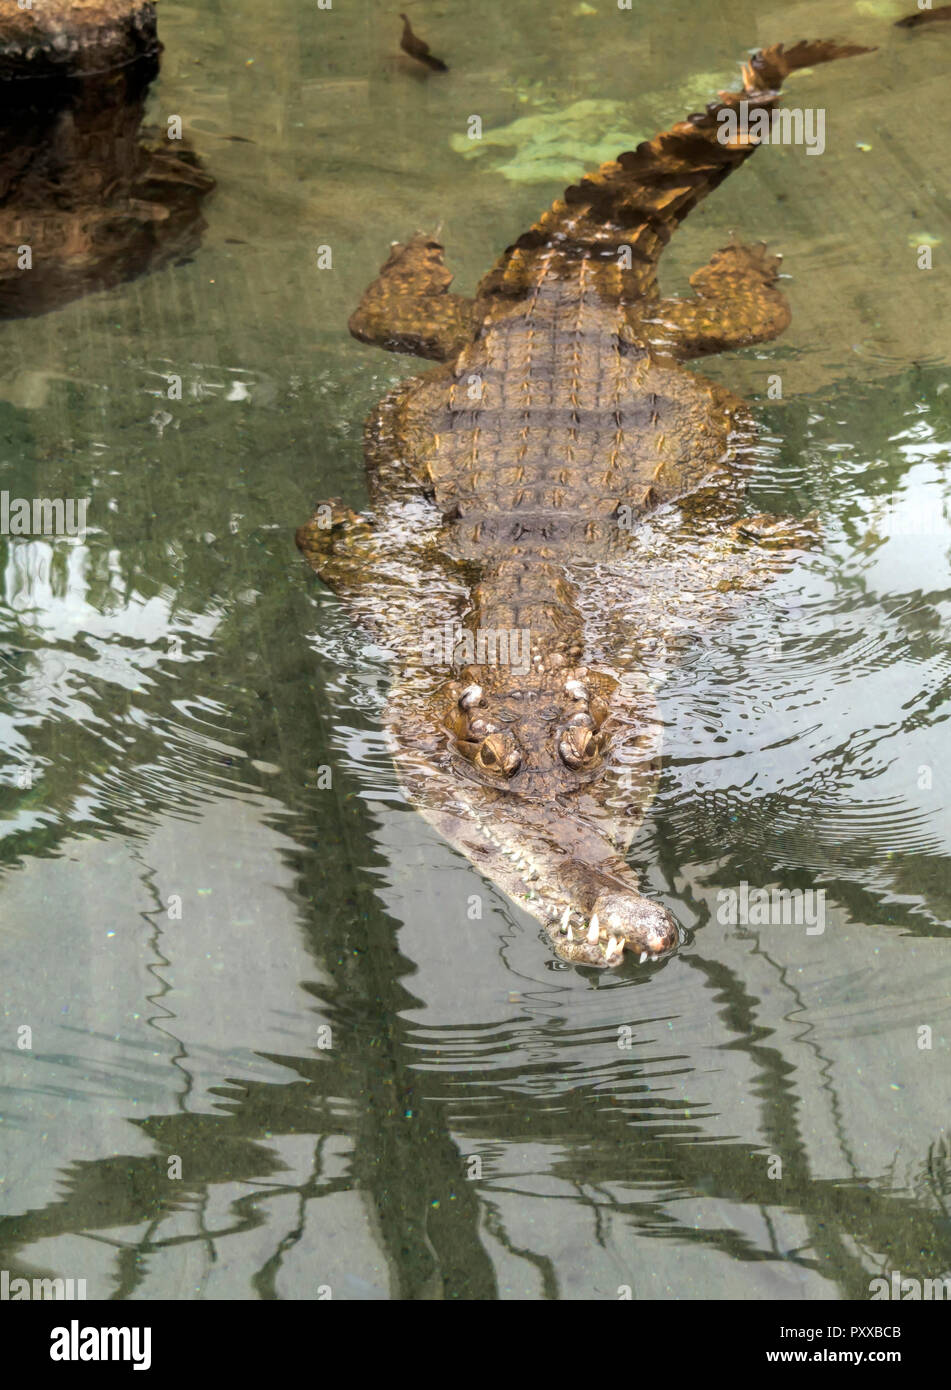 Крокодилы в соленой воде. Крокодил в воде. Крокодил плывет. Крокодил под водой. Крокодилы плавают или ходят.